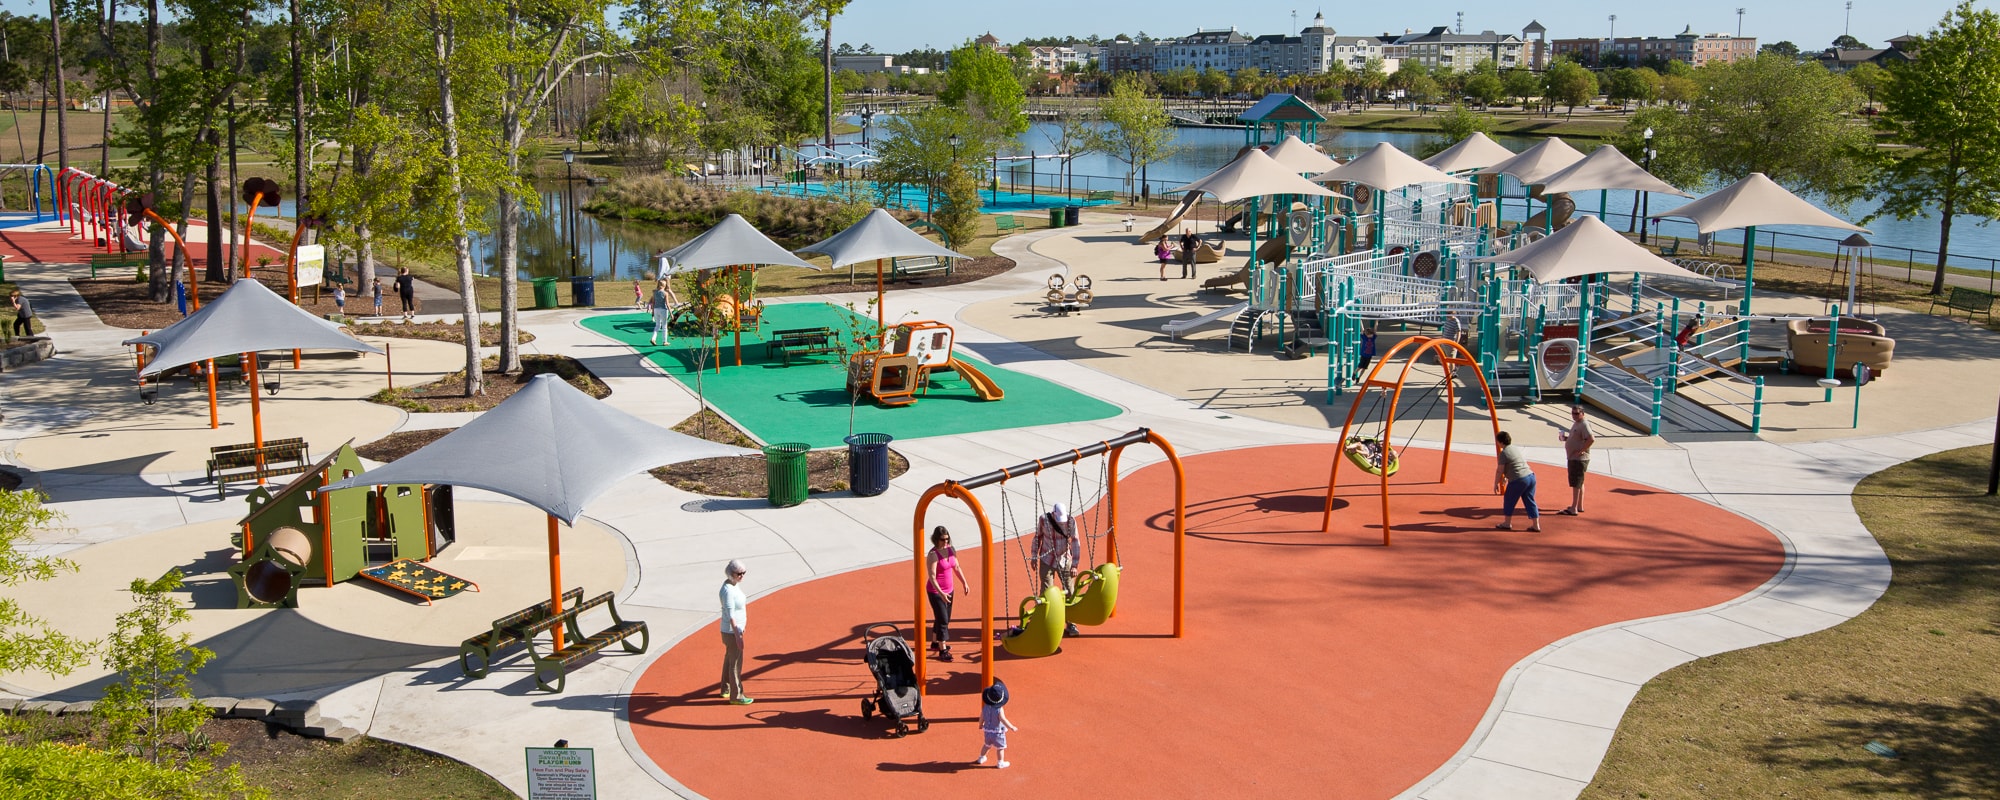 Aerial image of Savannah's playground